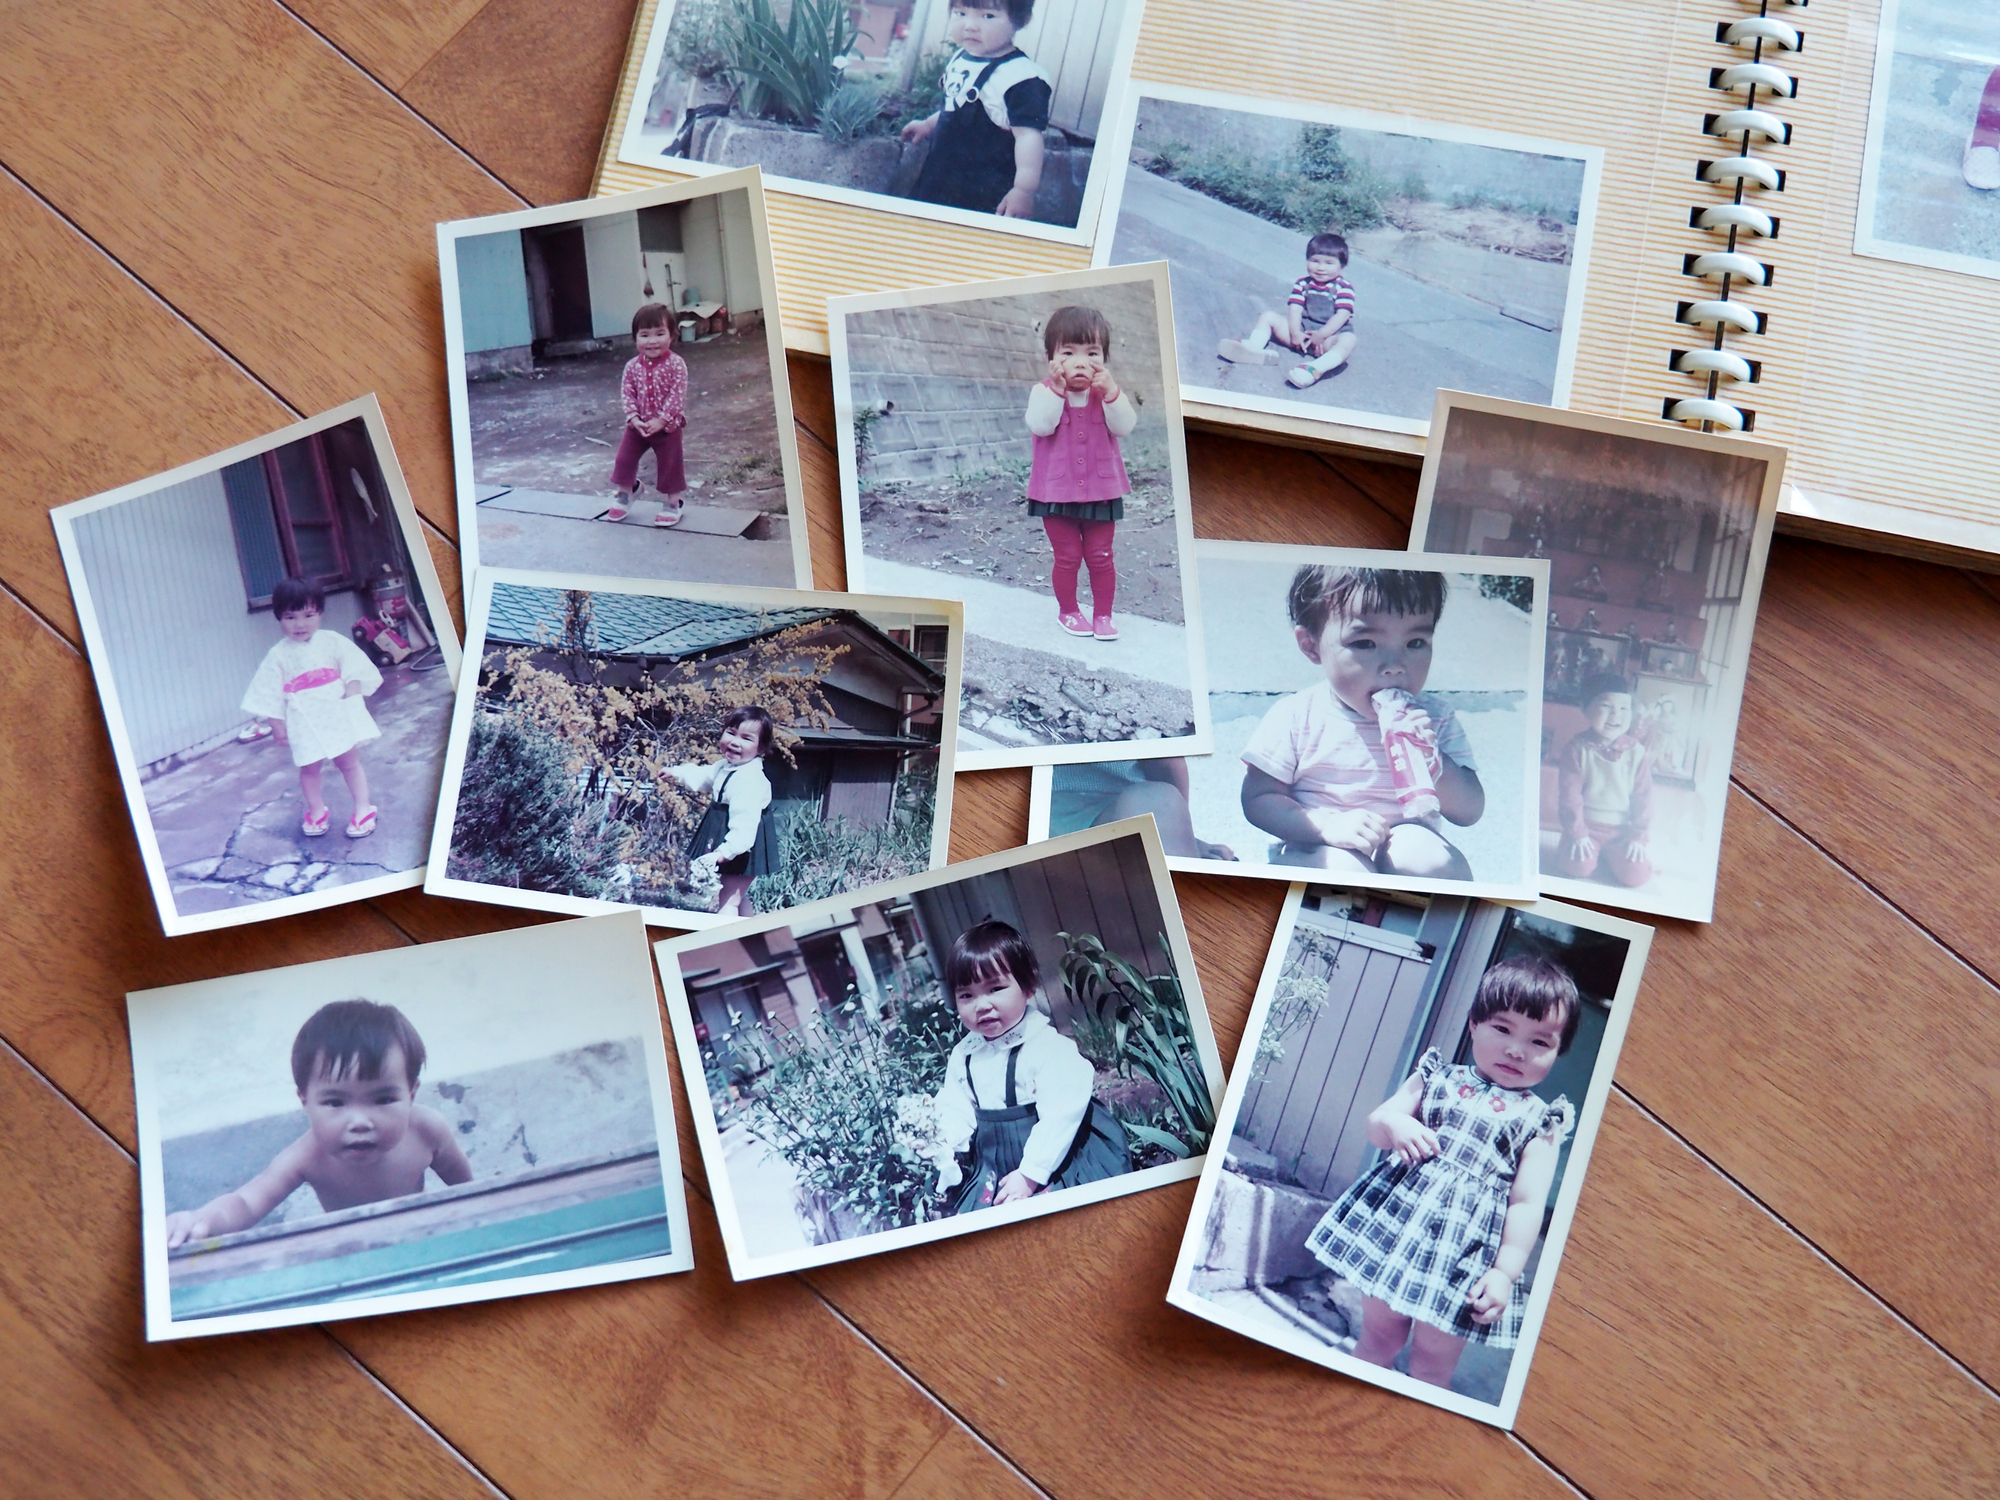 Pictures, childhood memories